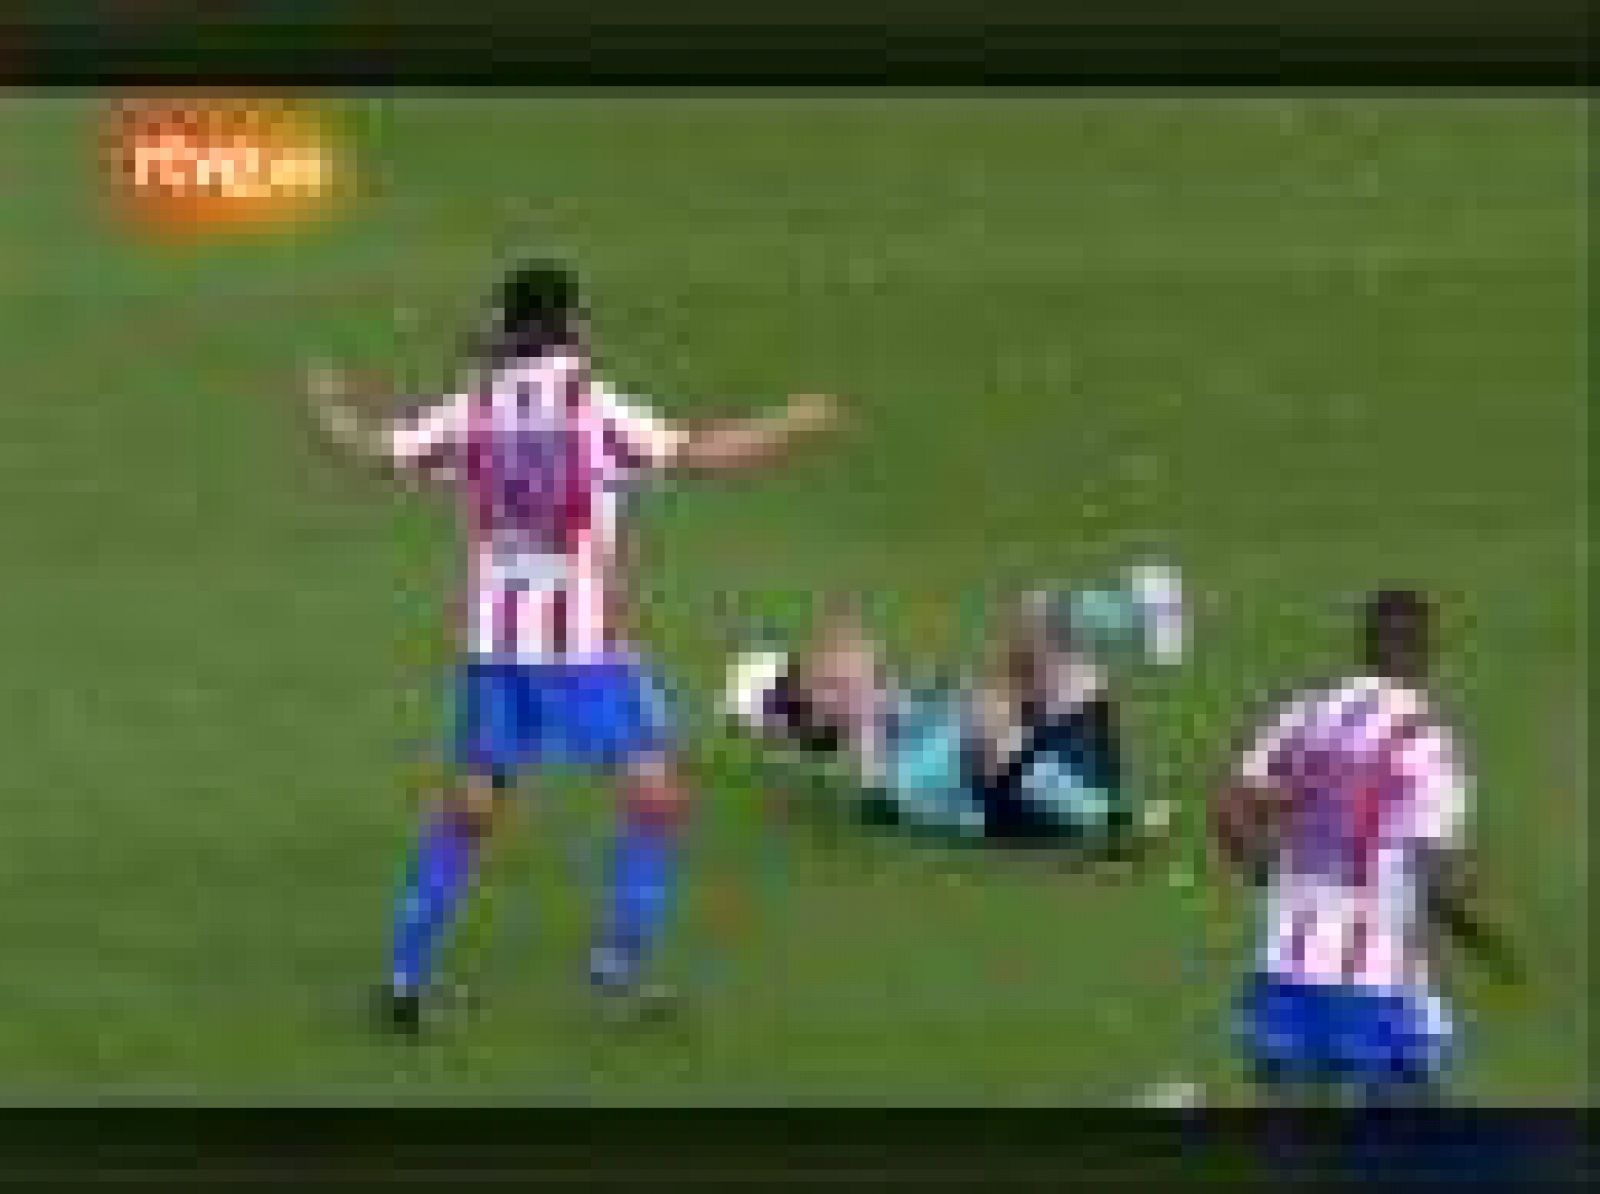  El jugador del Barcelona, Leo Messi, tuvo que abandonar el campo en camilla después del pisotón que le dio en el tobillo el futbolista del Atlético de Madrid, Ujfalusi.